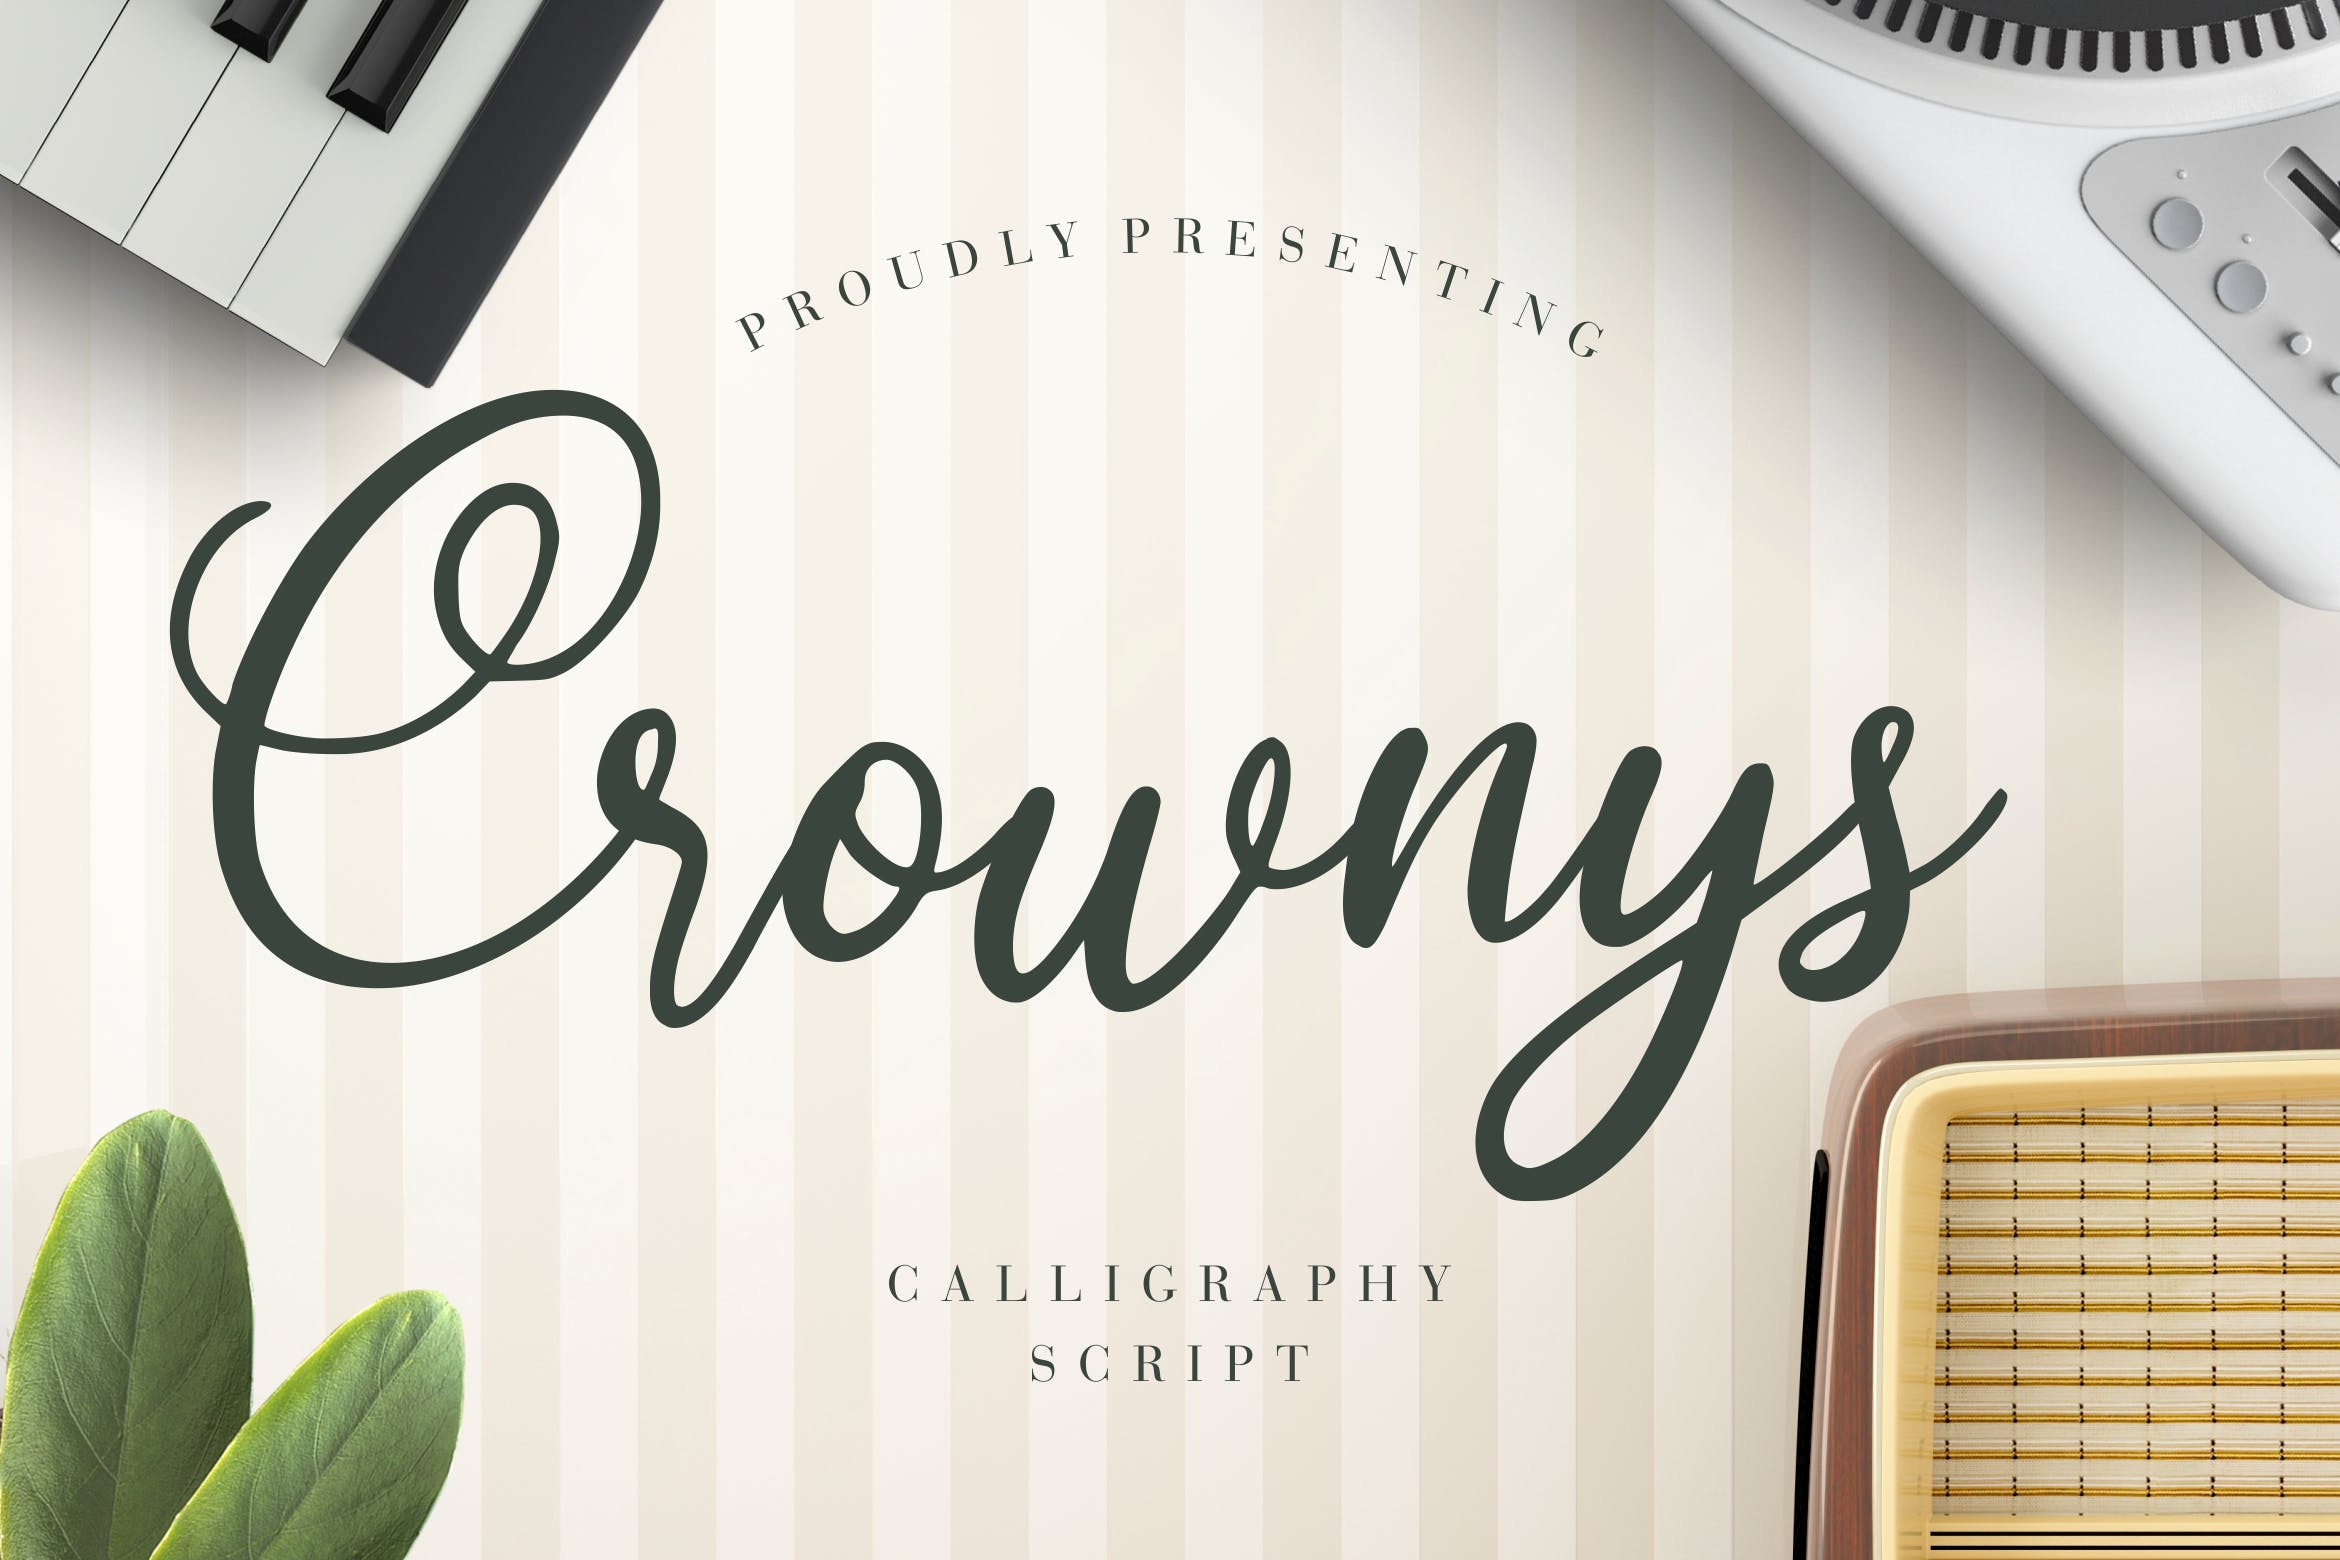 非常适合品牌设计的优雅风格英文书法字体 Crownys Calligraphy Script插图